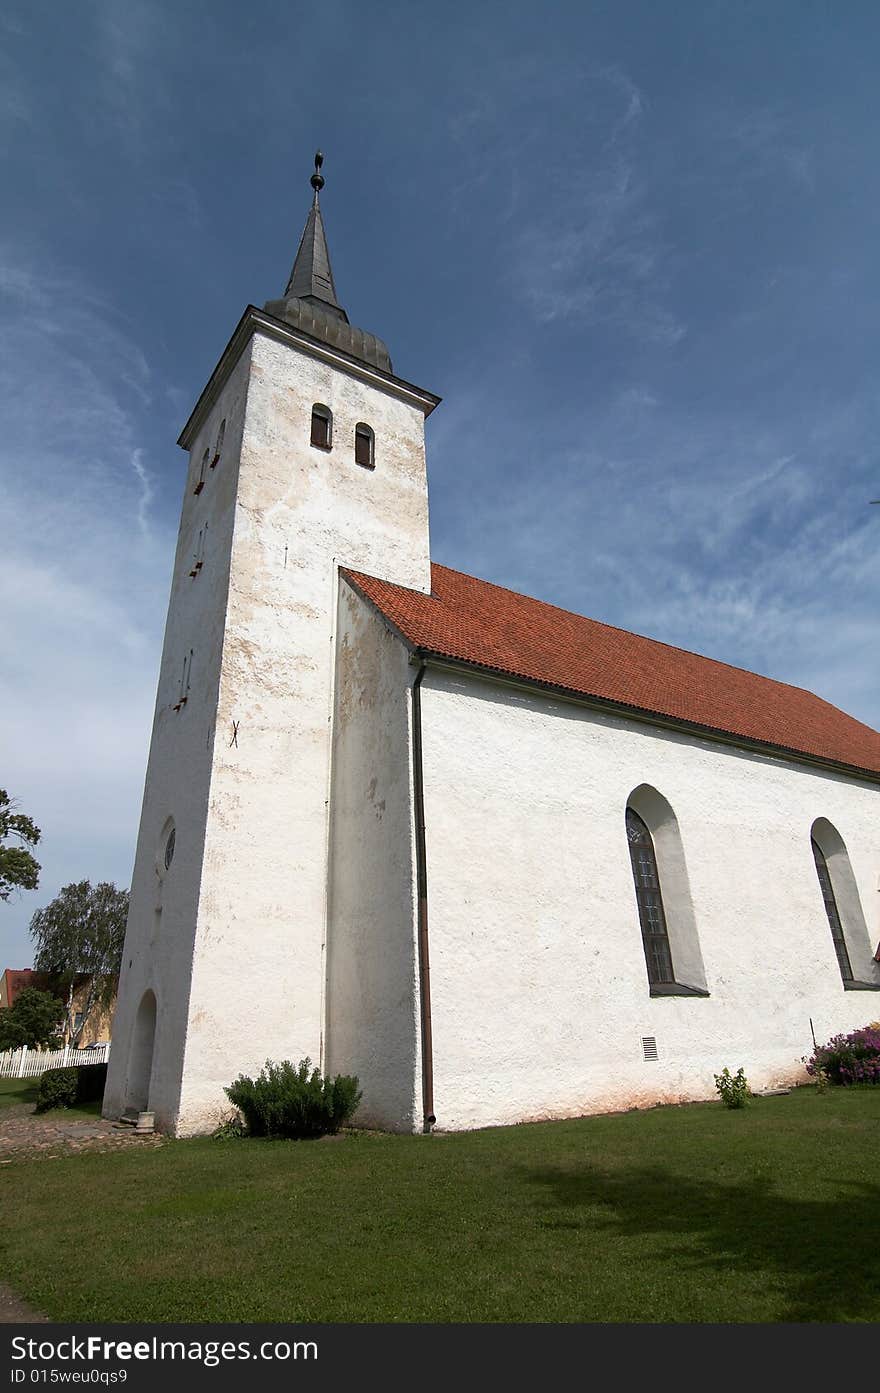 St. John's Lutheran Church (Jaanikirik) in Viljandi, Estonia,